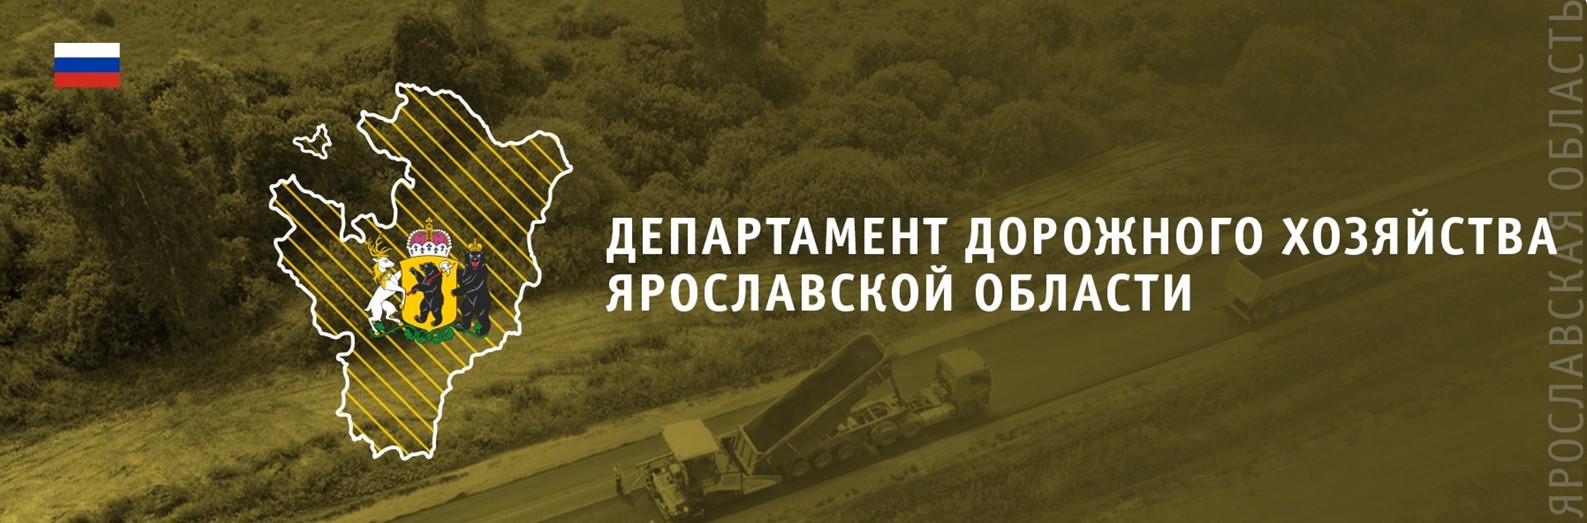 Департамент дорожного хозяйства ярославской области официальный сайт